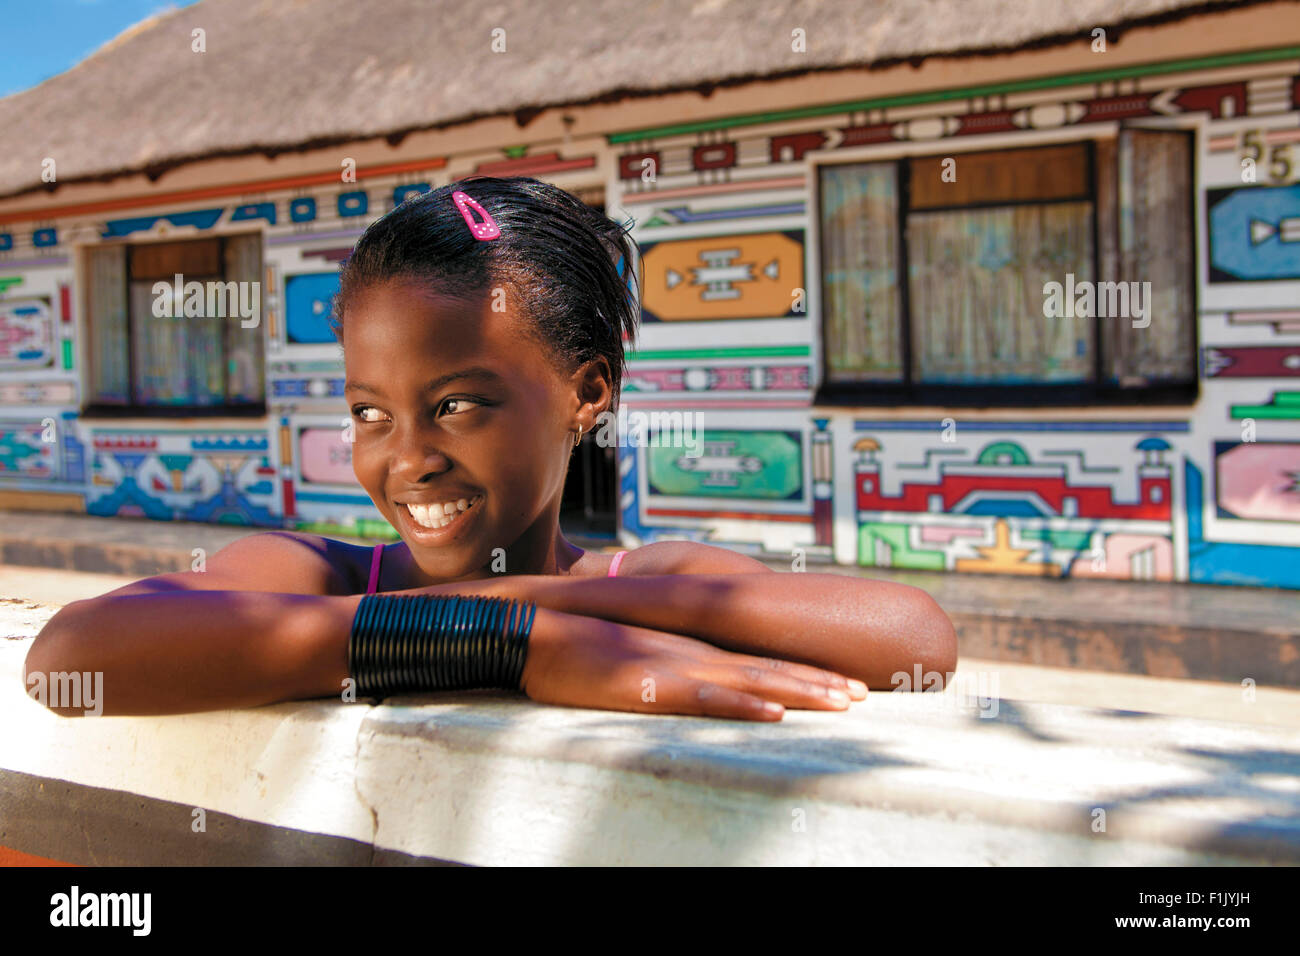 Ndebele houses and young girl Stock Photo